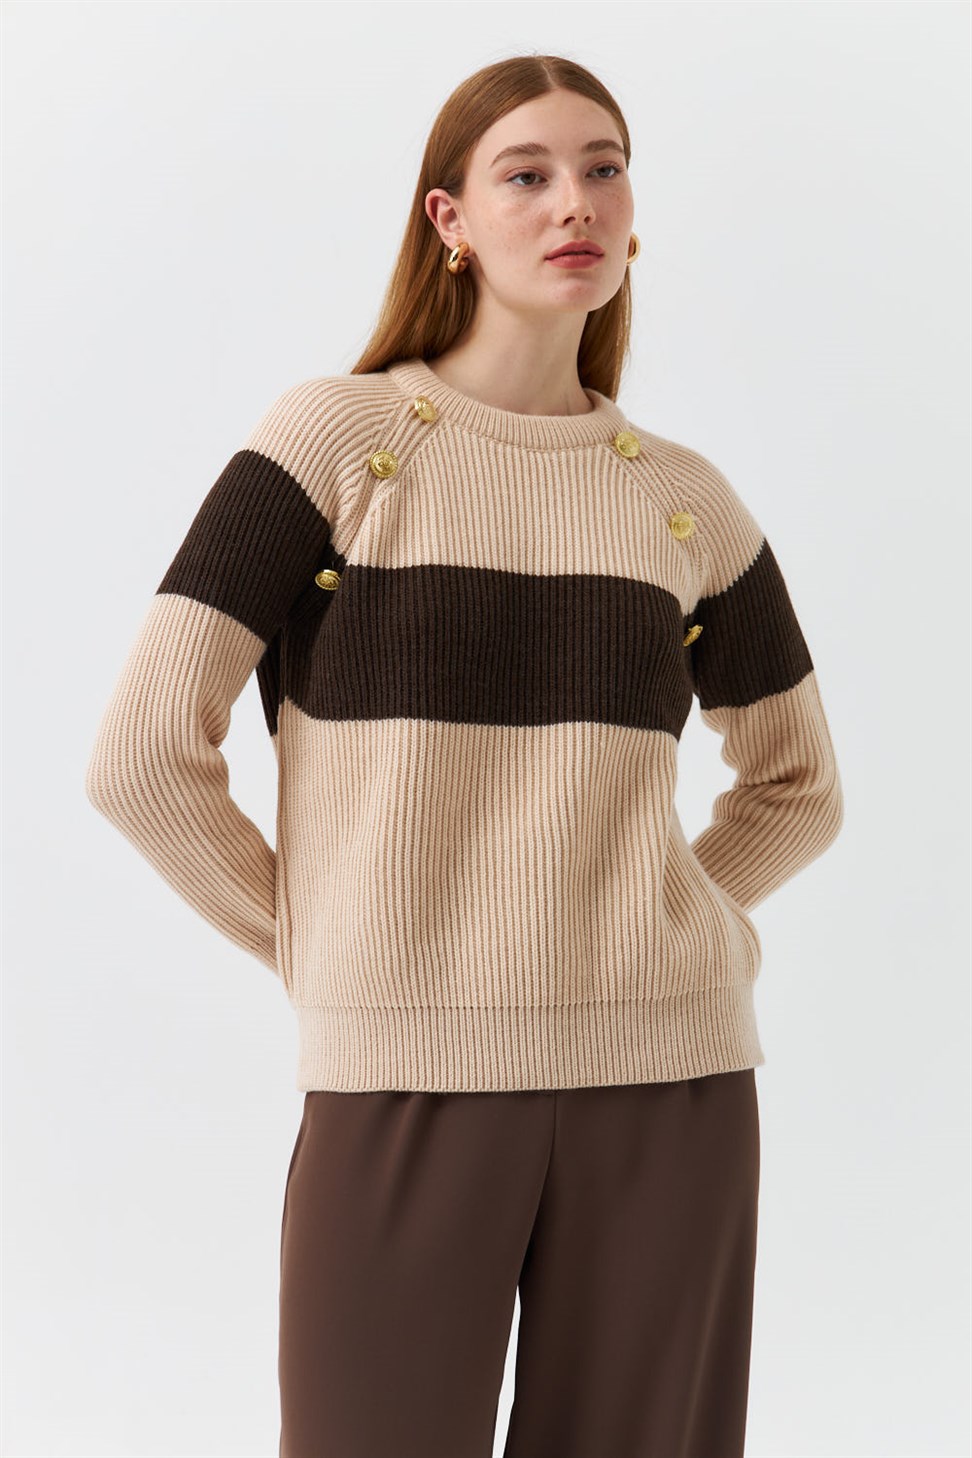 Modest Crew Neck Striped Beige Womens Knitwear Sweater